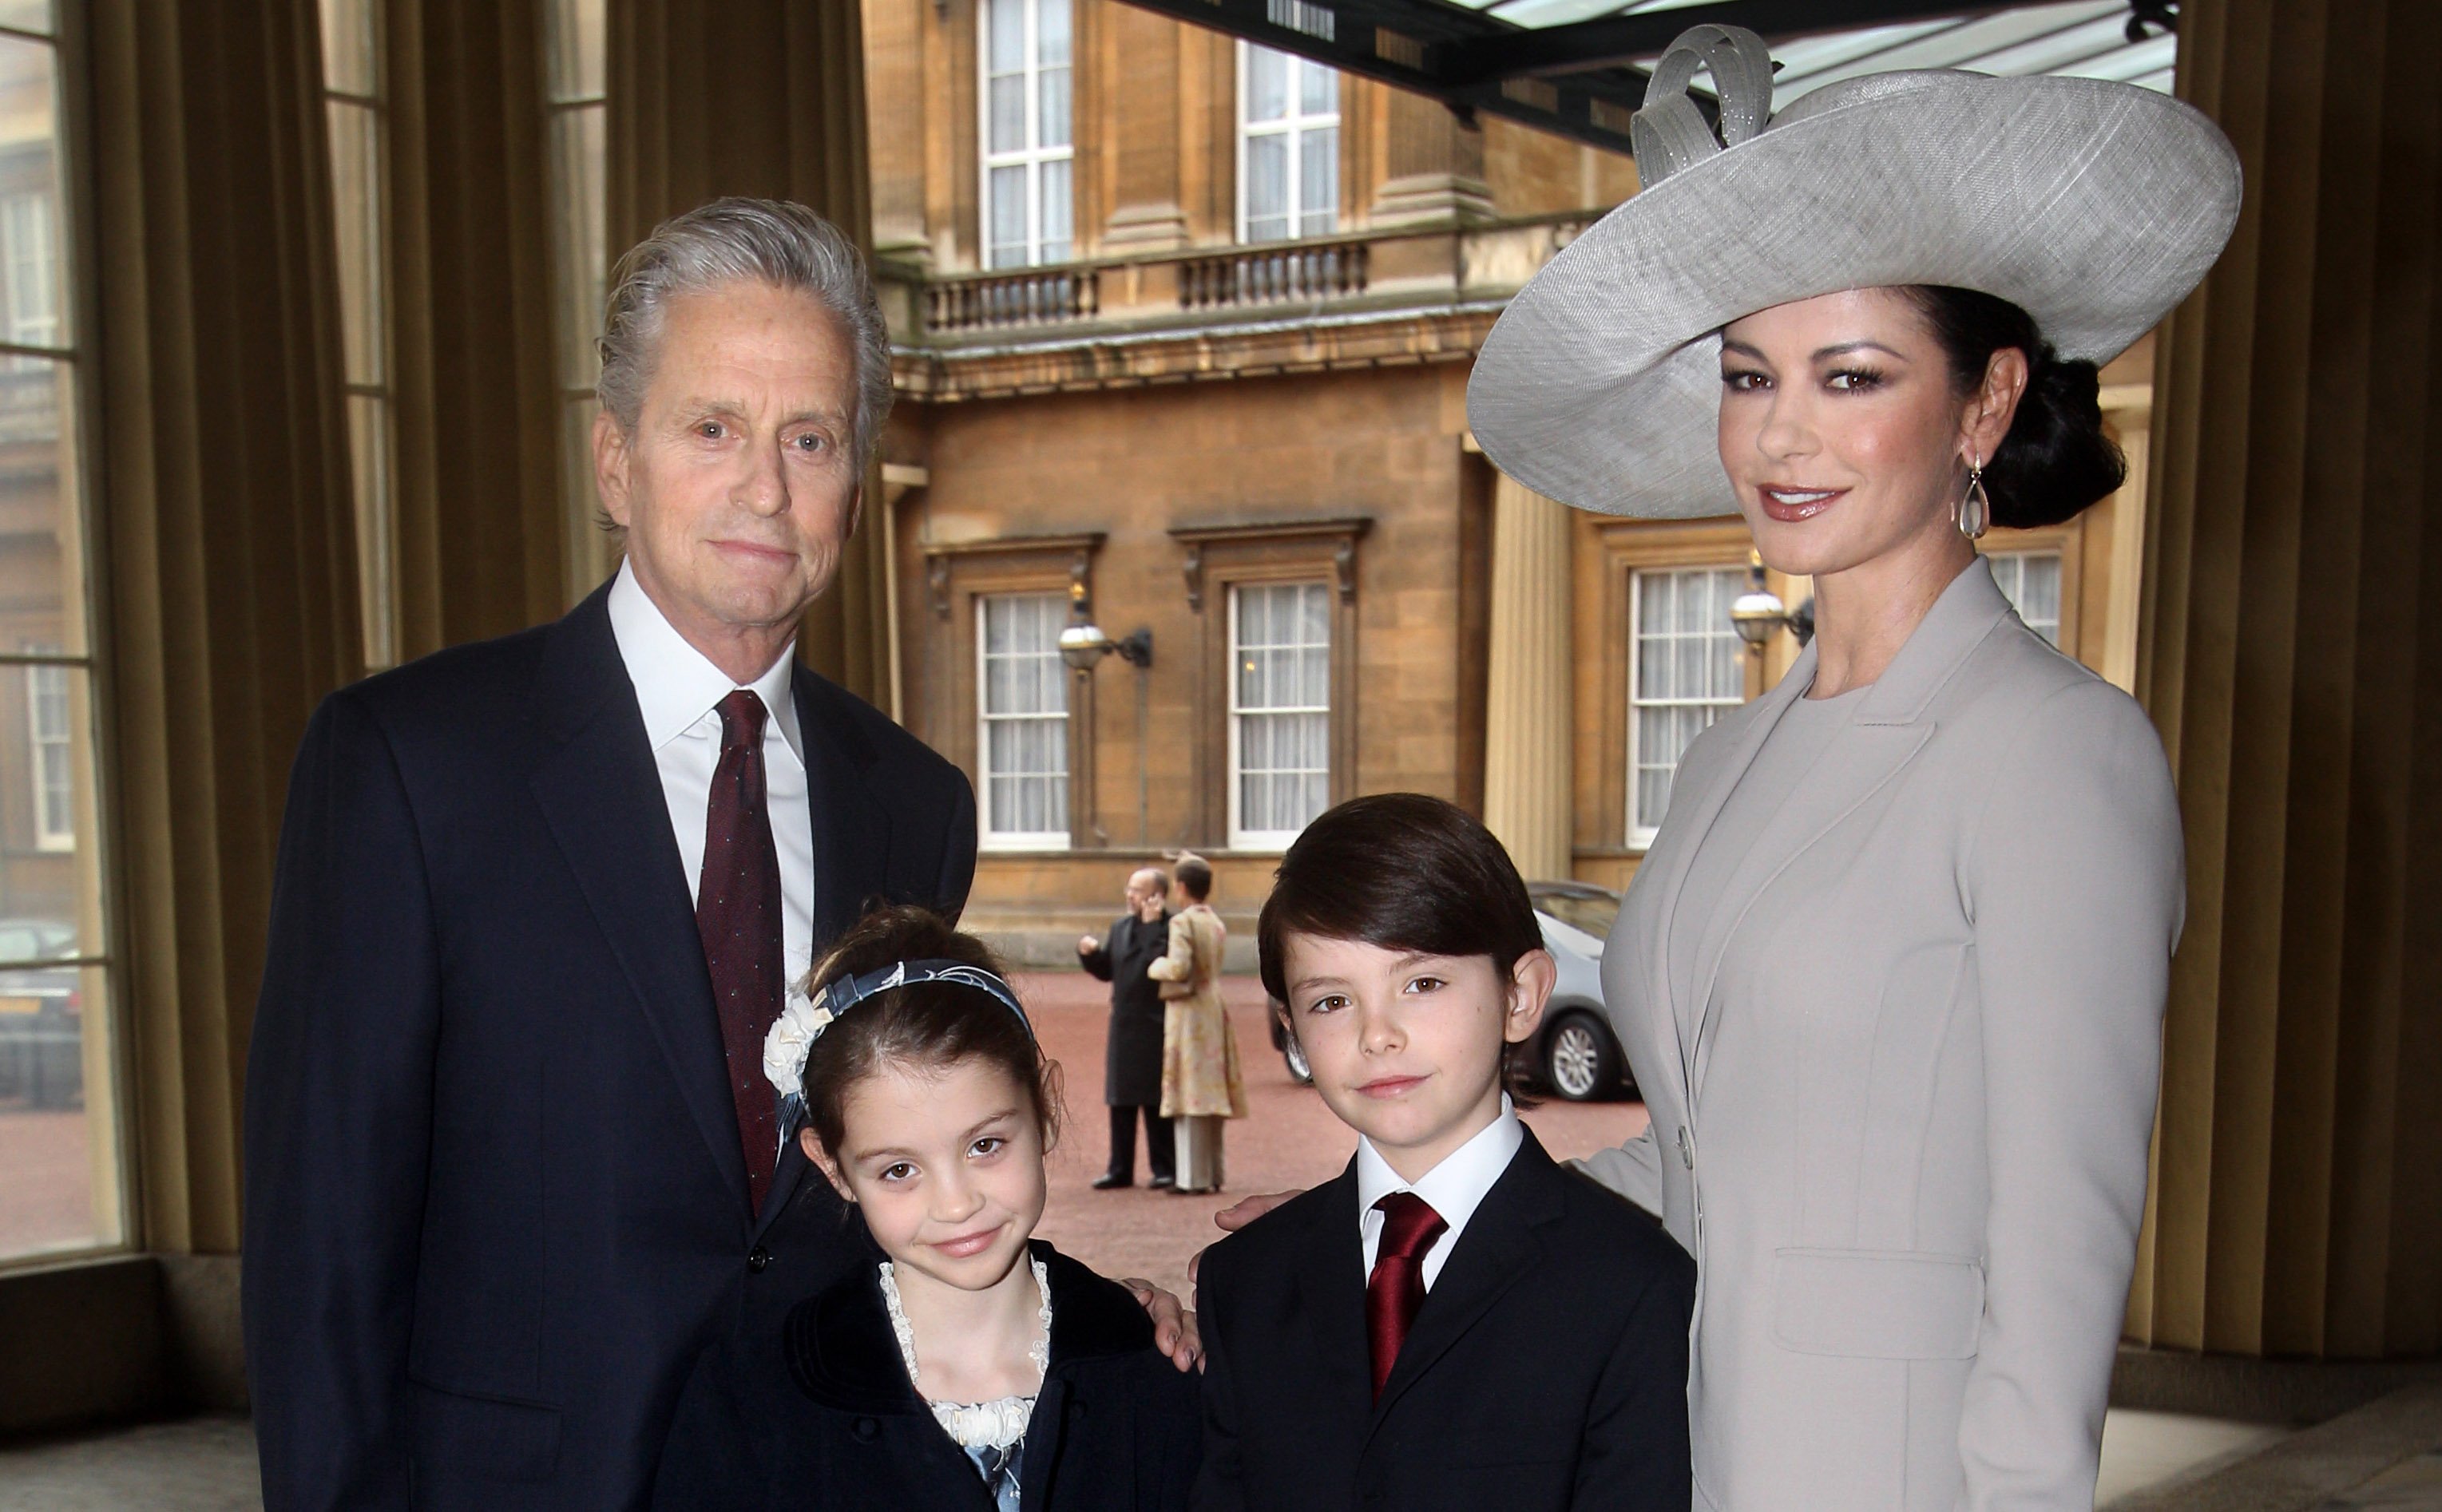 Catherine Zeta-Jones, Michael Douglas y sus hijos Dylan y Carys, en el Palacio de Buckingham el 24 de febrero de 2011 en Londres, Inglaterra. | Foto: Getty Images